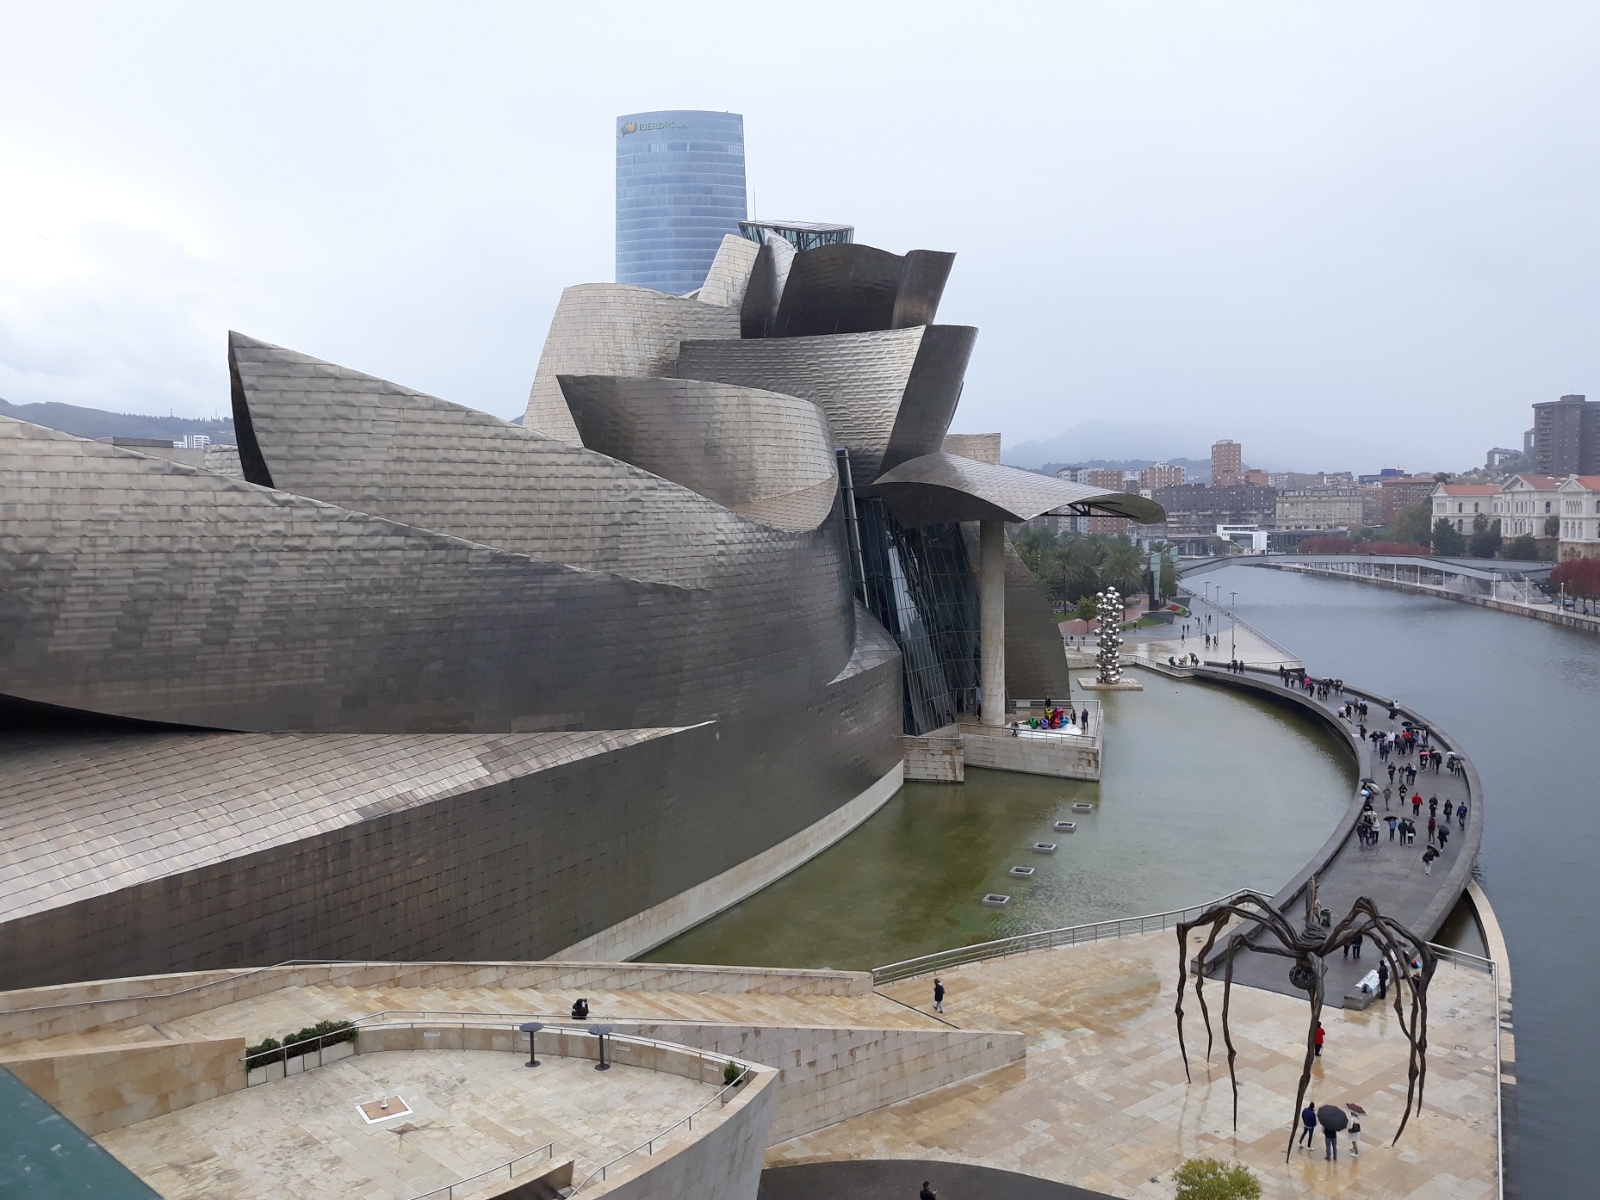 Das Guggenheim Museum, es zieht die Menschen aus aller Herren Länder an.